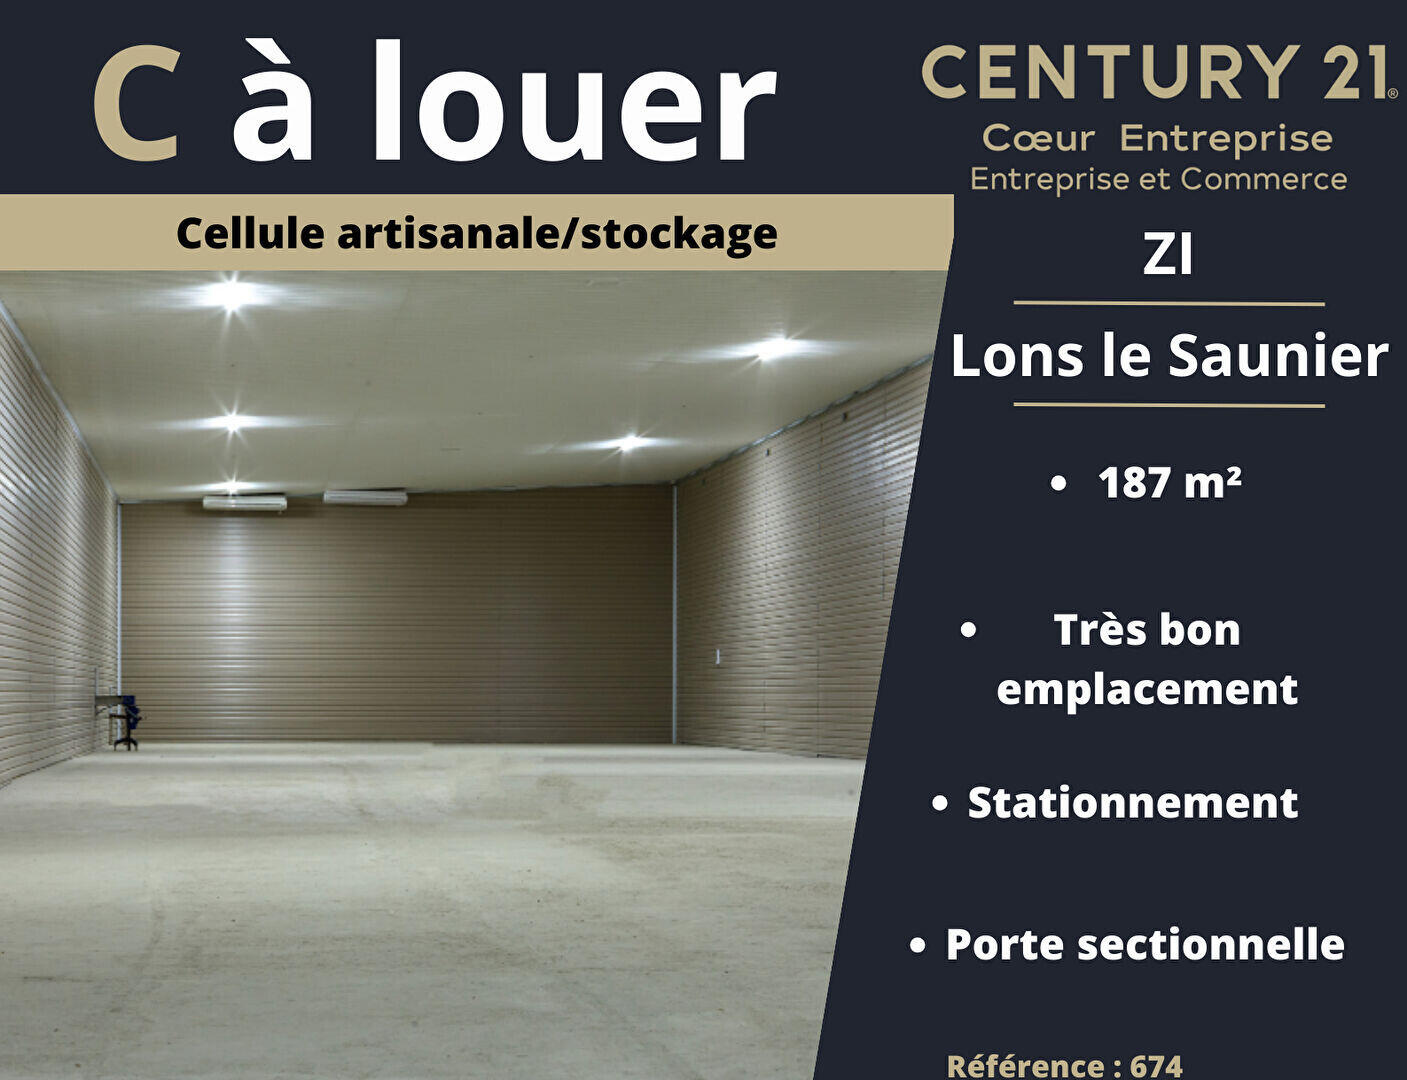 A louer local d'artisanal 187m² à Lons Le Saunier 